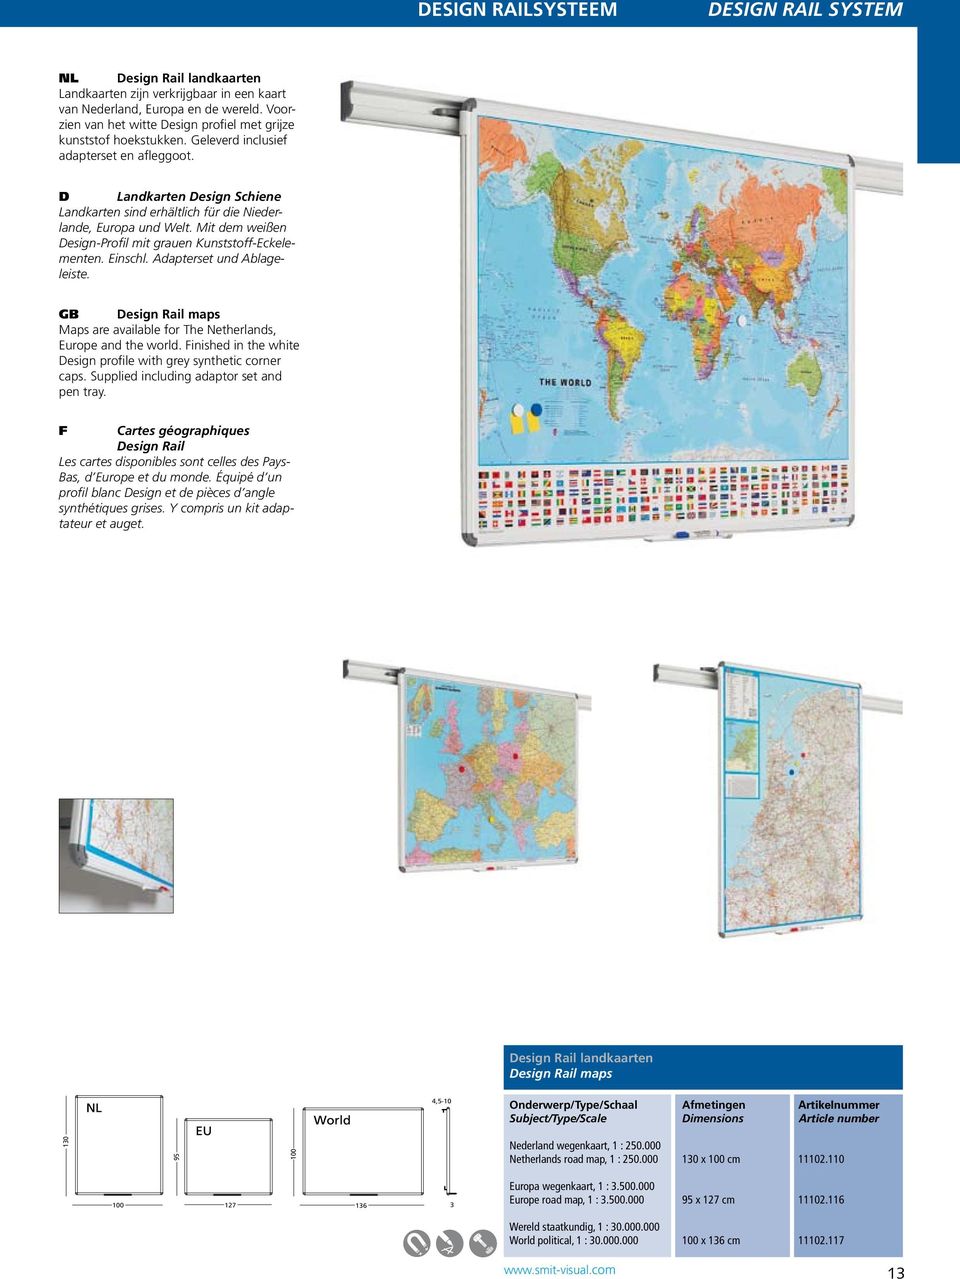 D Landkarten Design Schiene Landkarten sind erhältlich für die Niederlande, Europa und Welt. Mit dem weißen Design-Profil mit grauen Kunststoff-Eckelementen. Einschl. Adapterset und Ablageleiste.